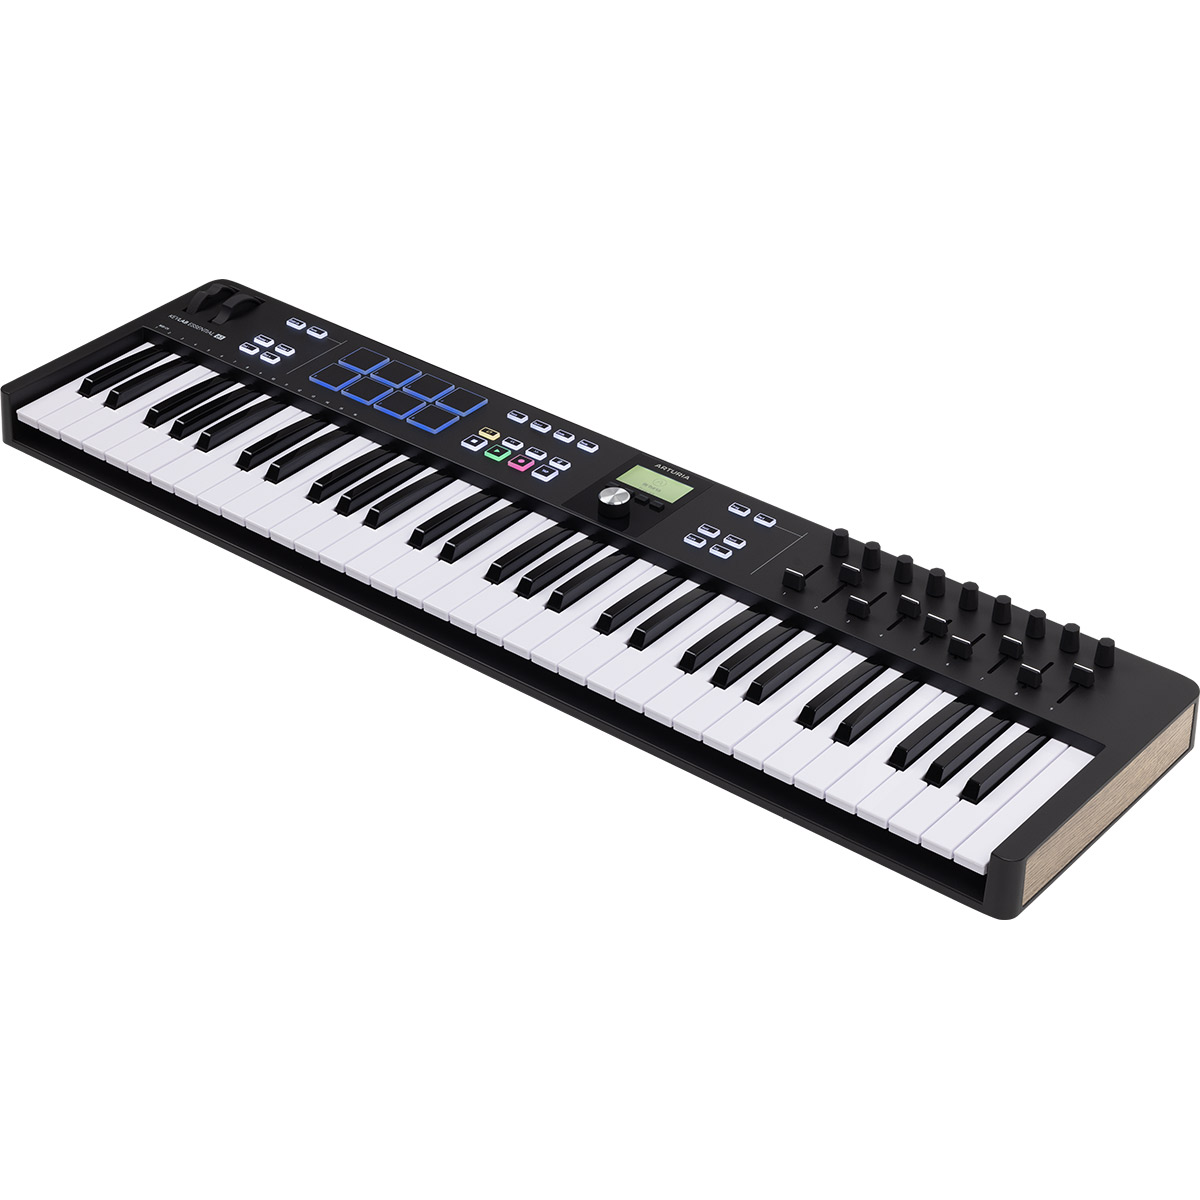 ARTURIA KeyLab Essential 61 MK3 (ブラック) 61鍵盤 MIDIキーボード コントローラー USB アートリア